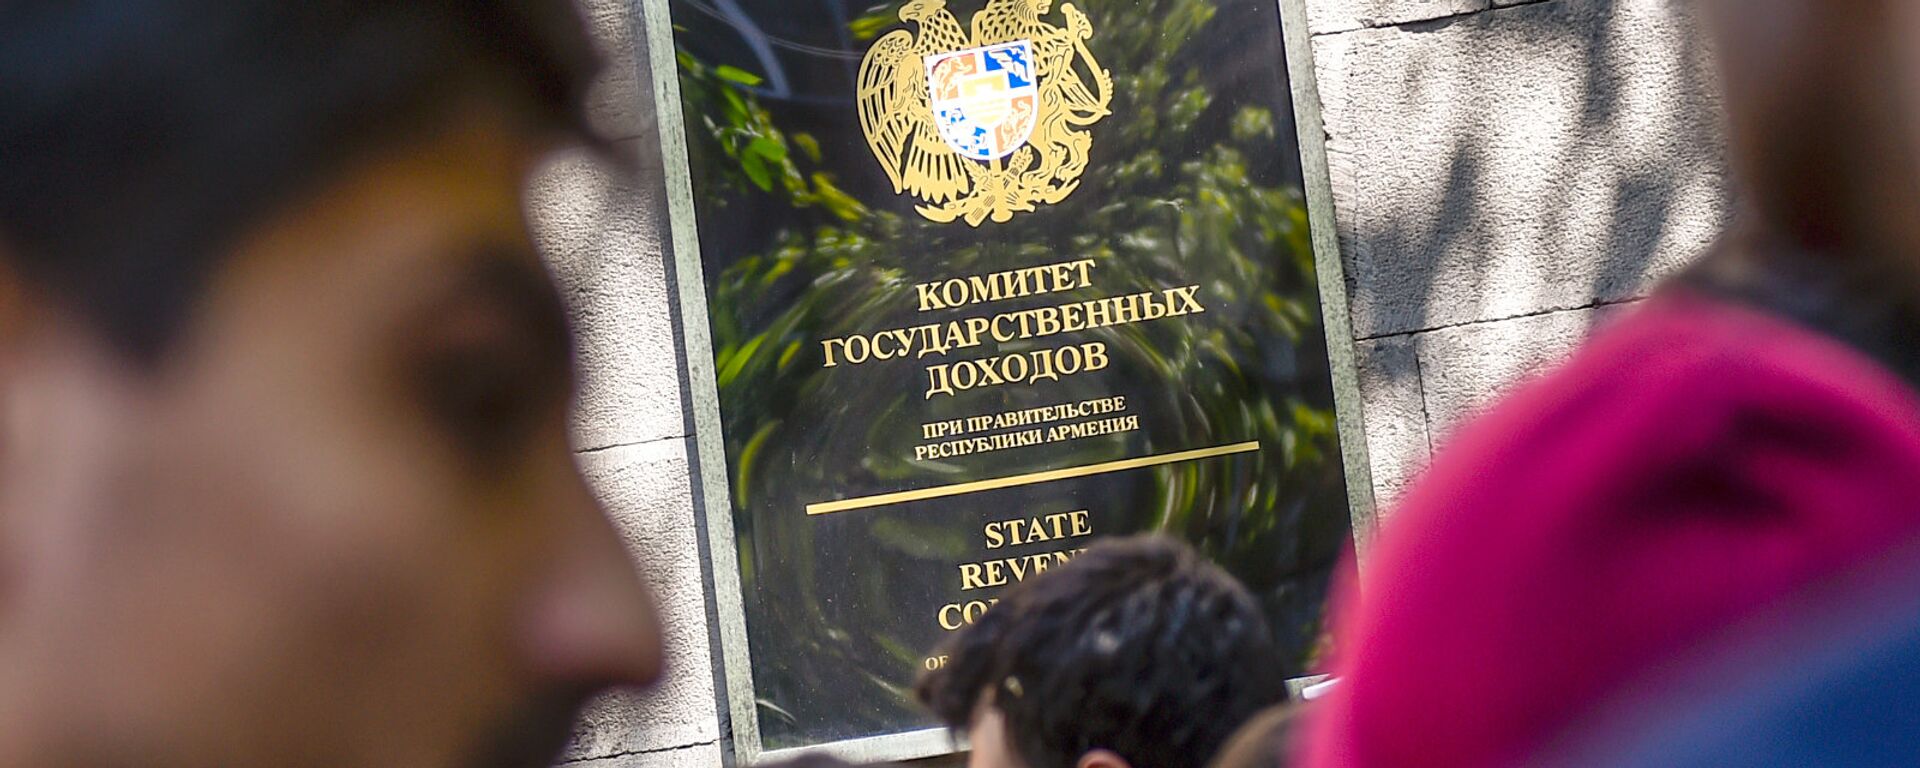 Активисты заблокировали вход в здание Комитета гос.доходов (17 апреля 2018). Ереван - Sputnik Армения, 1920, 11.04.2022